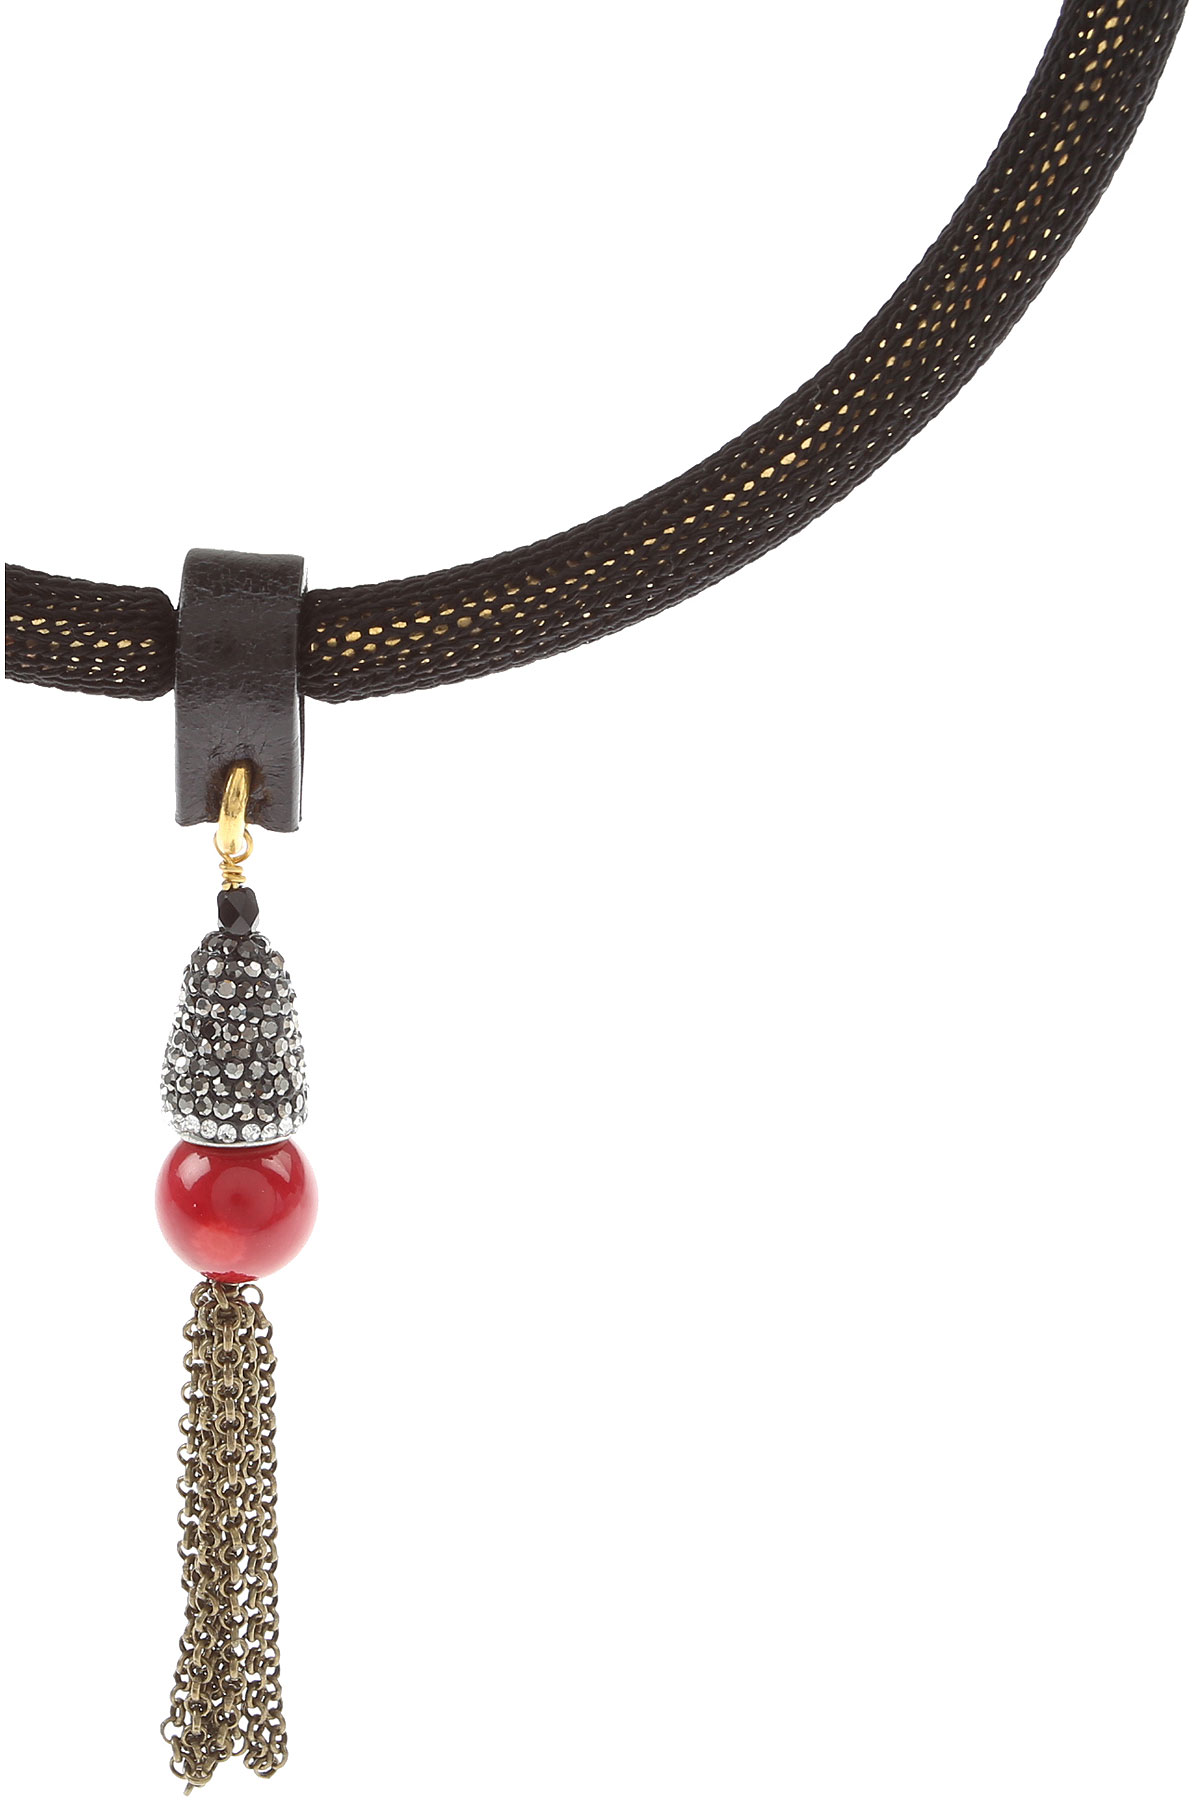 Centopercentocachmire Halskette für Damen Günstig im Sale, Schwarz, Baumwolle, 2017